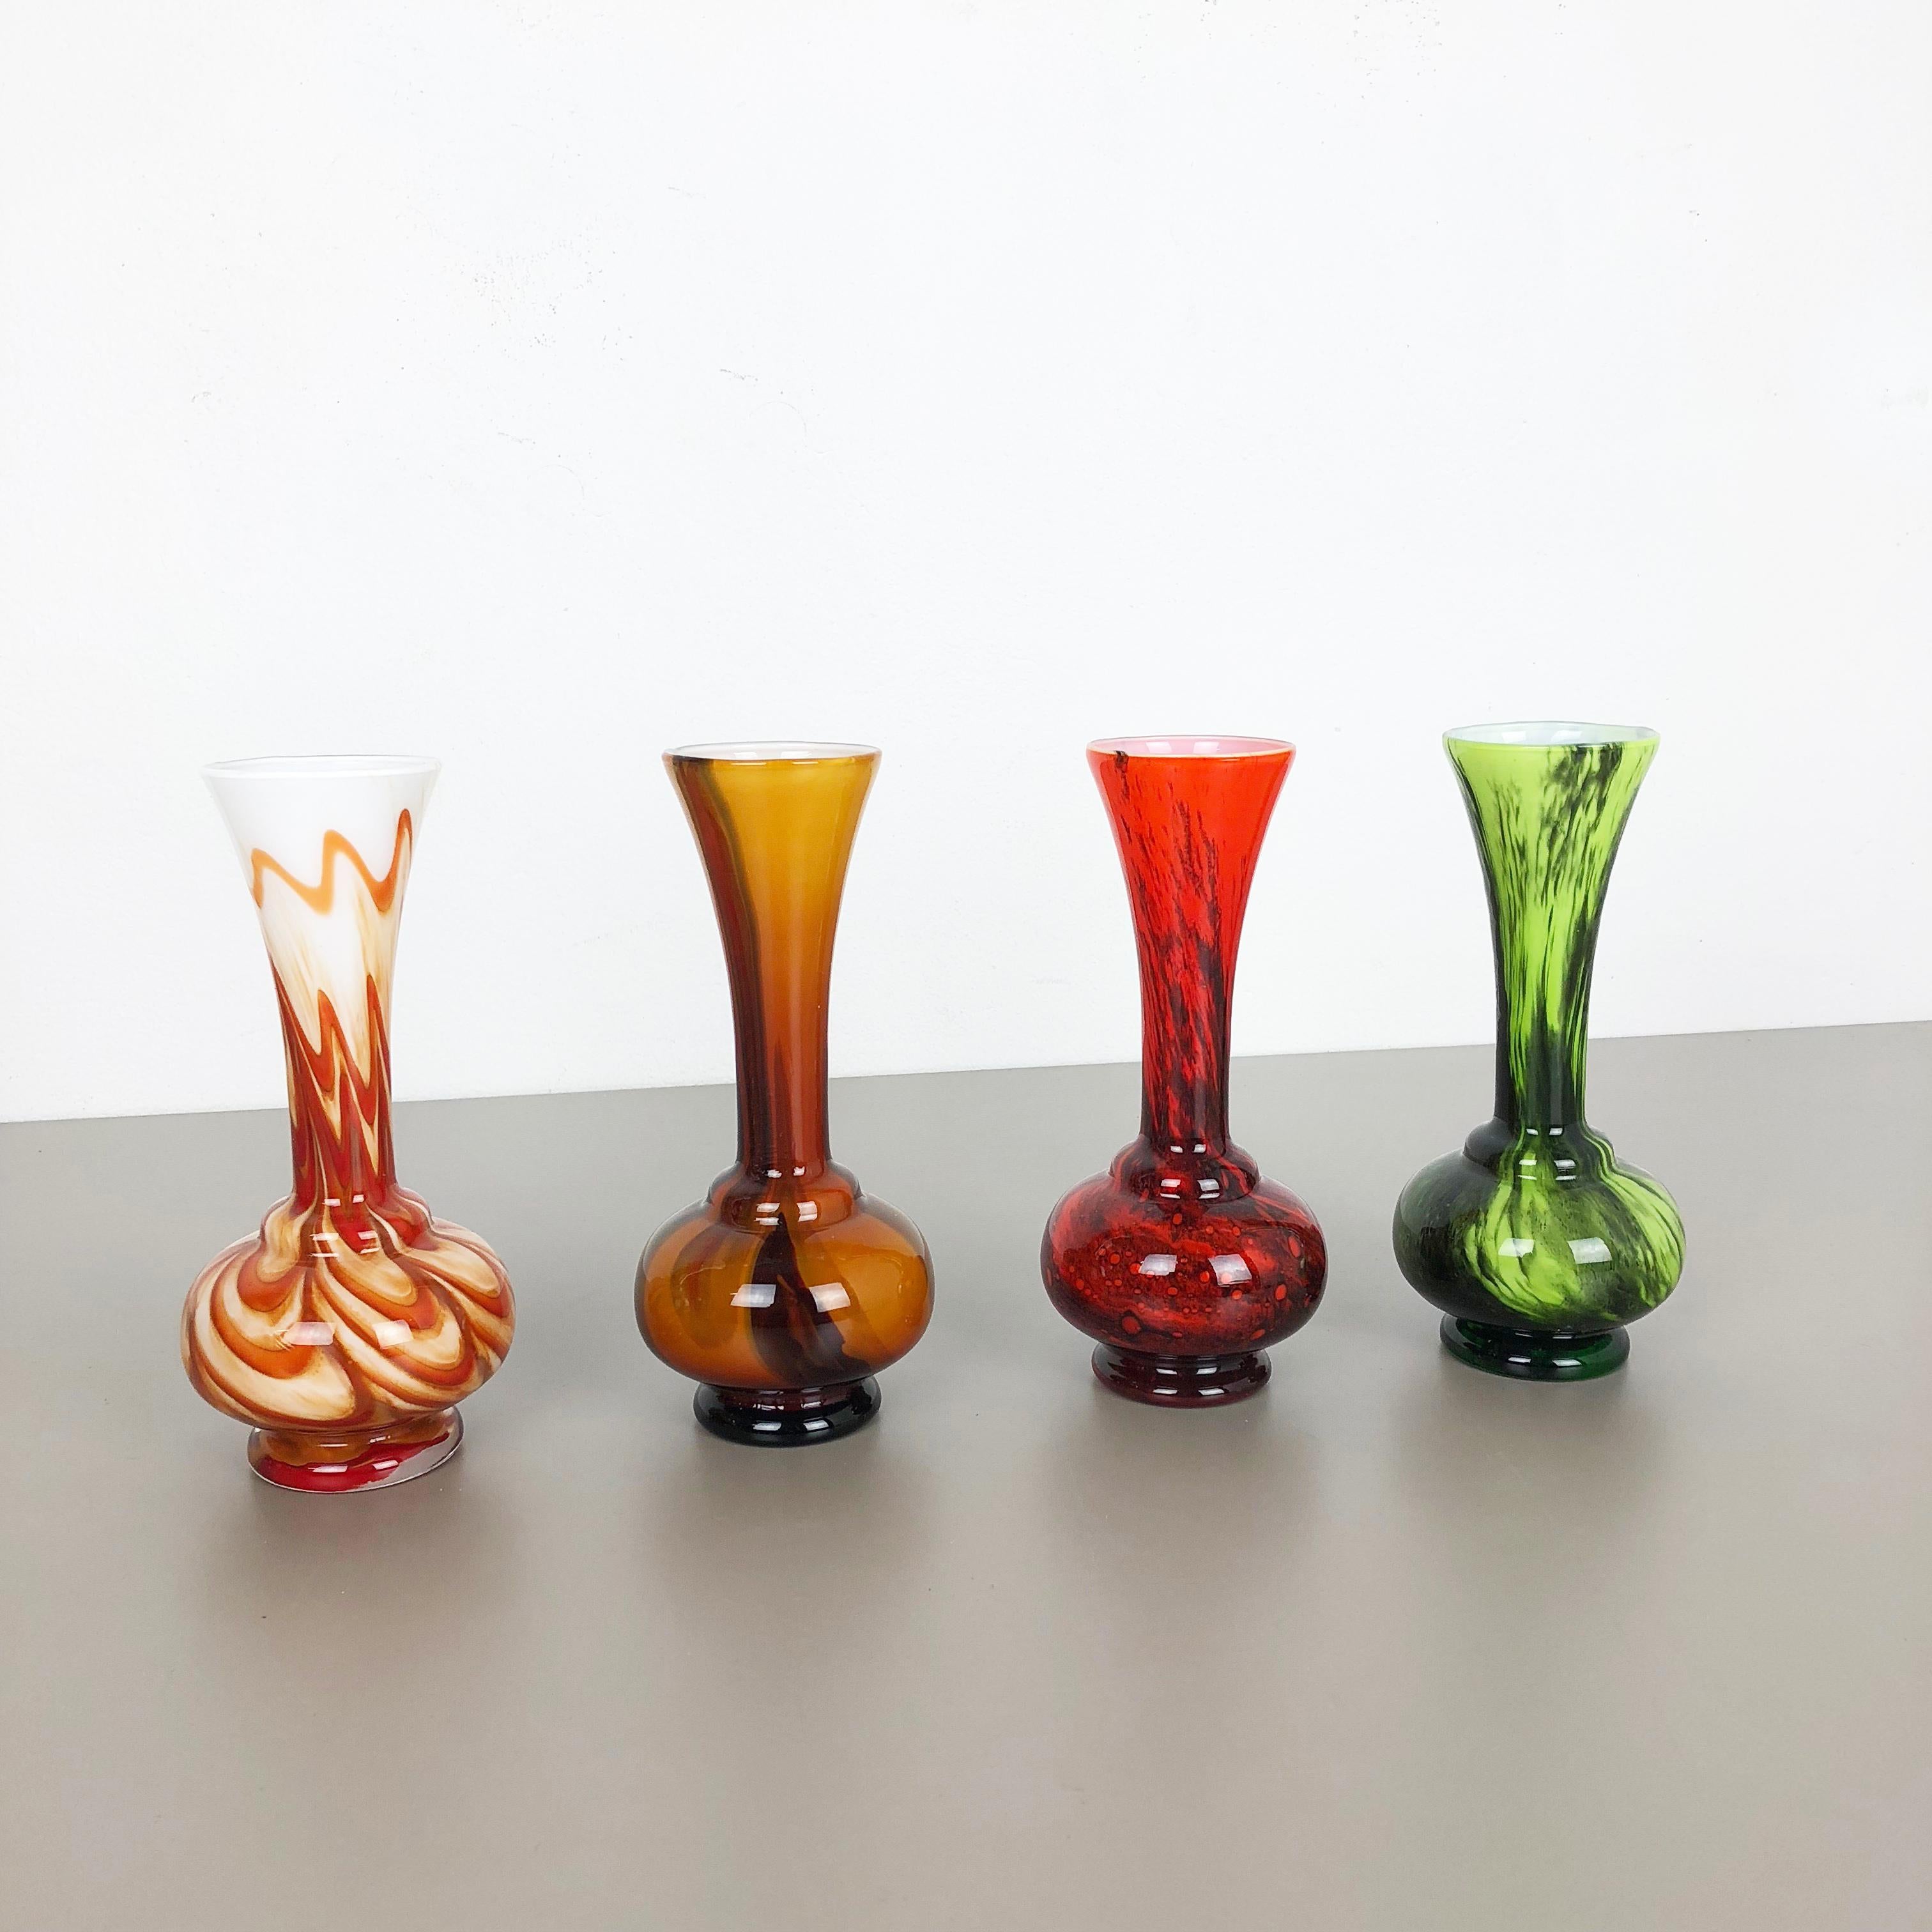 Artikel: Pop Art Vase 2er Set

Produzent: Opaline Florenz

Entwurf: Carlo Moretti

Jahrzehnt: 1970s.

Beschreibung: Original Vintage 1970er Jahre Pop Art mundgeblasen Vase Set in Italien von Opaline Florenz gemacht. Hergestellt aus